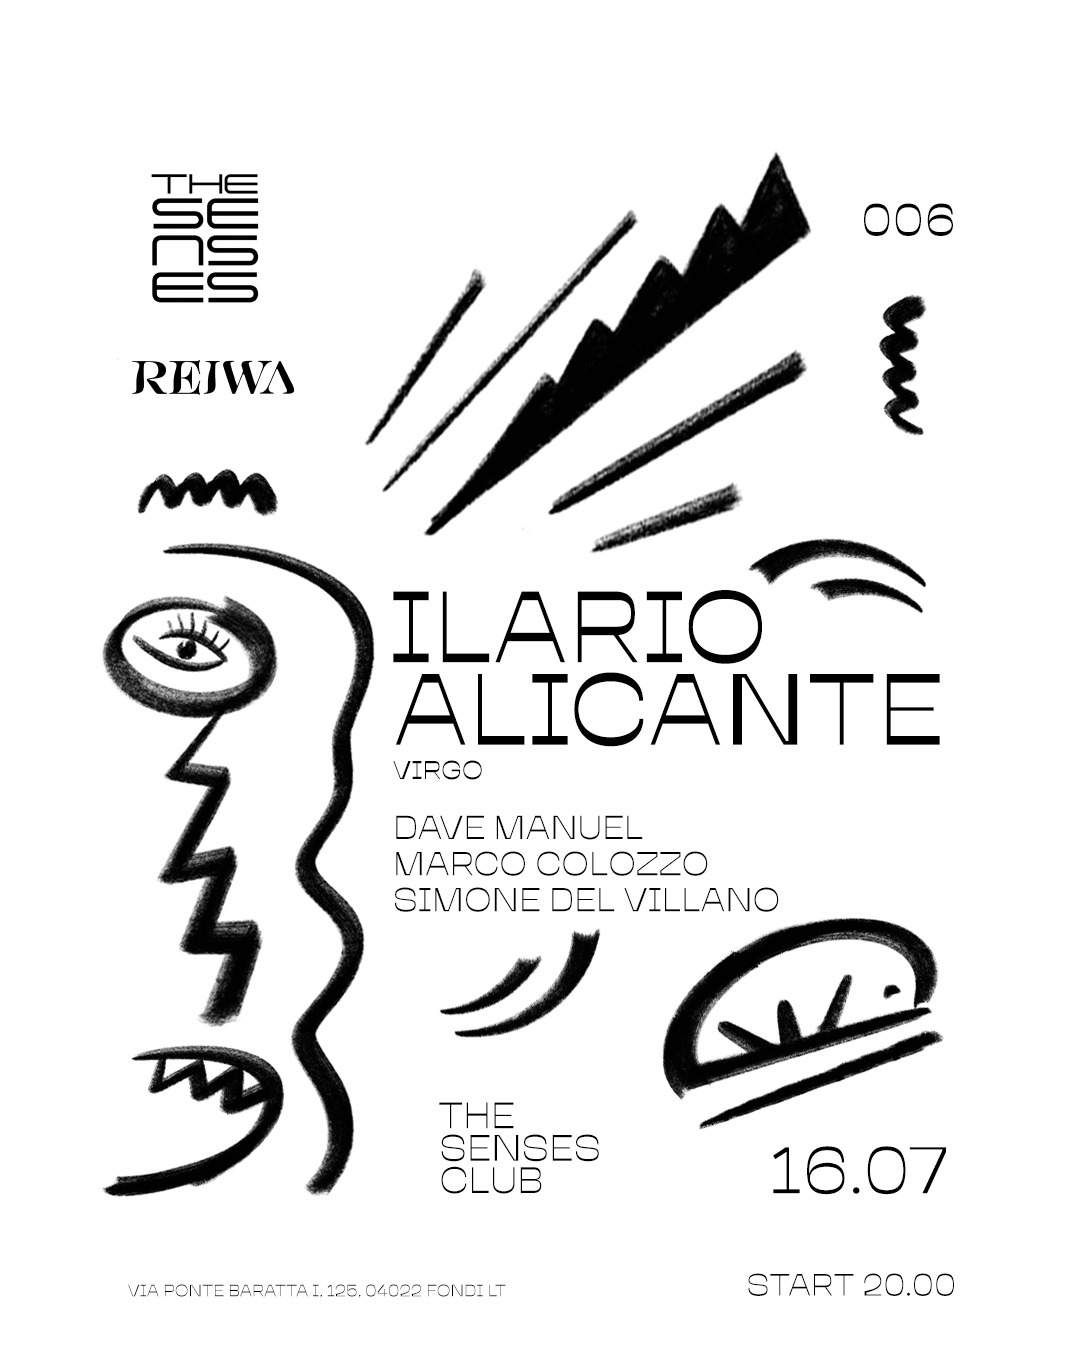 REIWA with Ilario Alicante - Página frontal